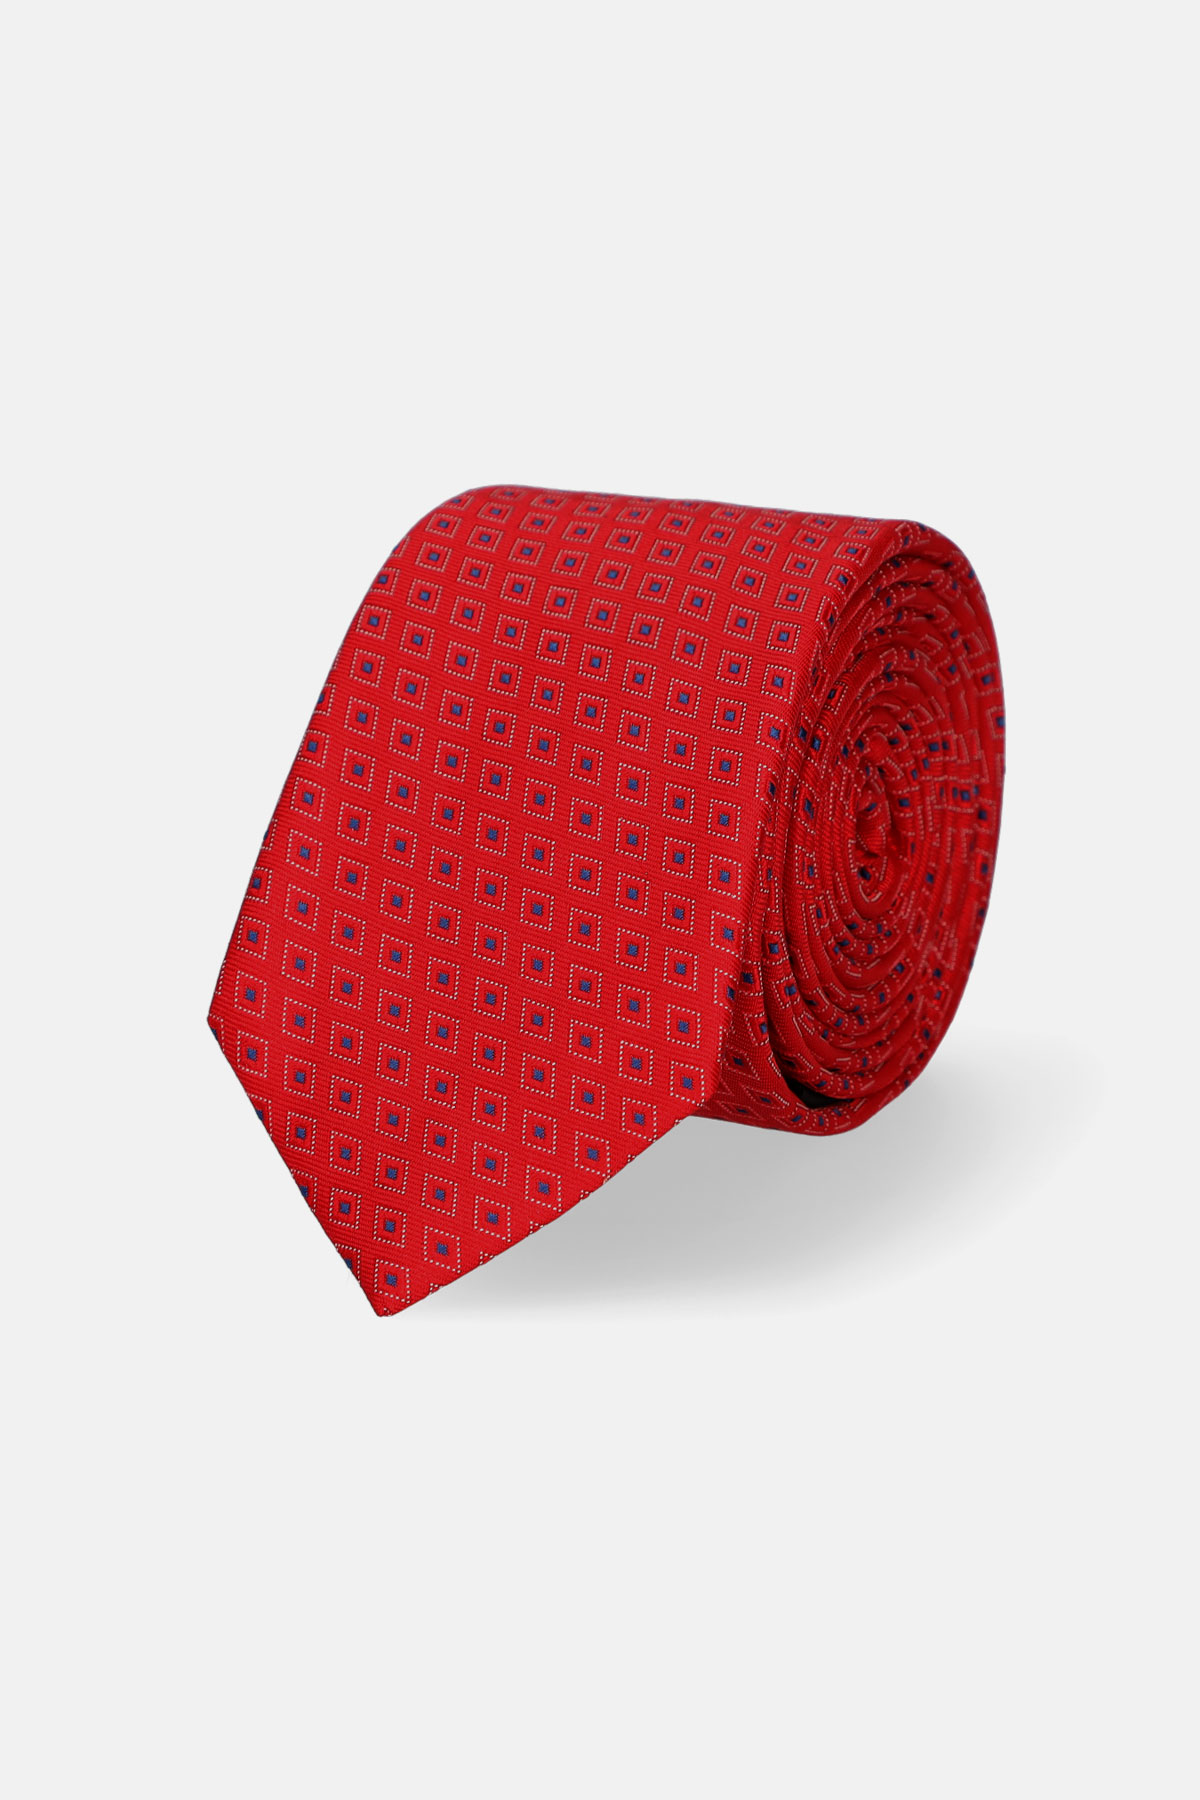 Krawat Czerwony Wzór